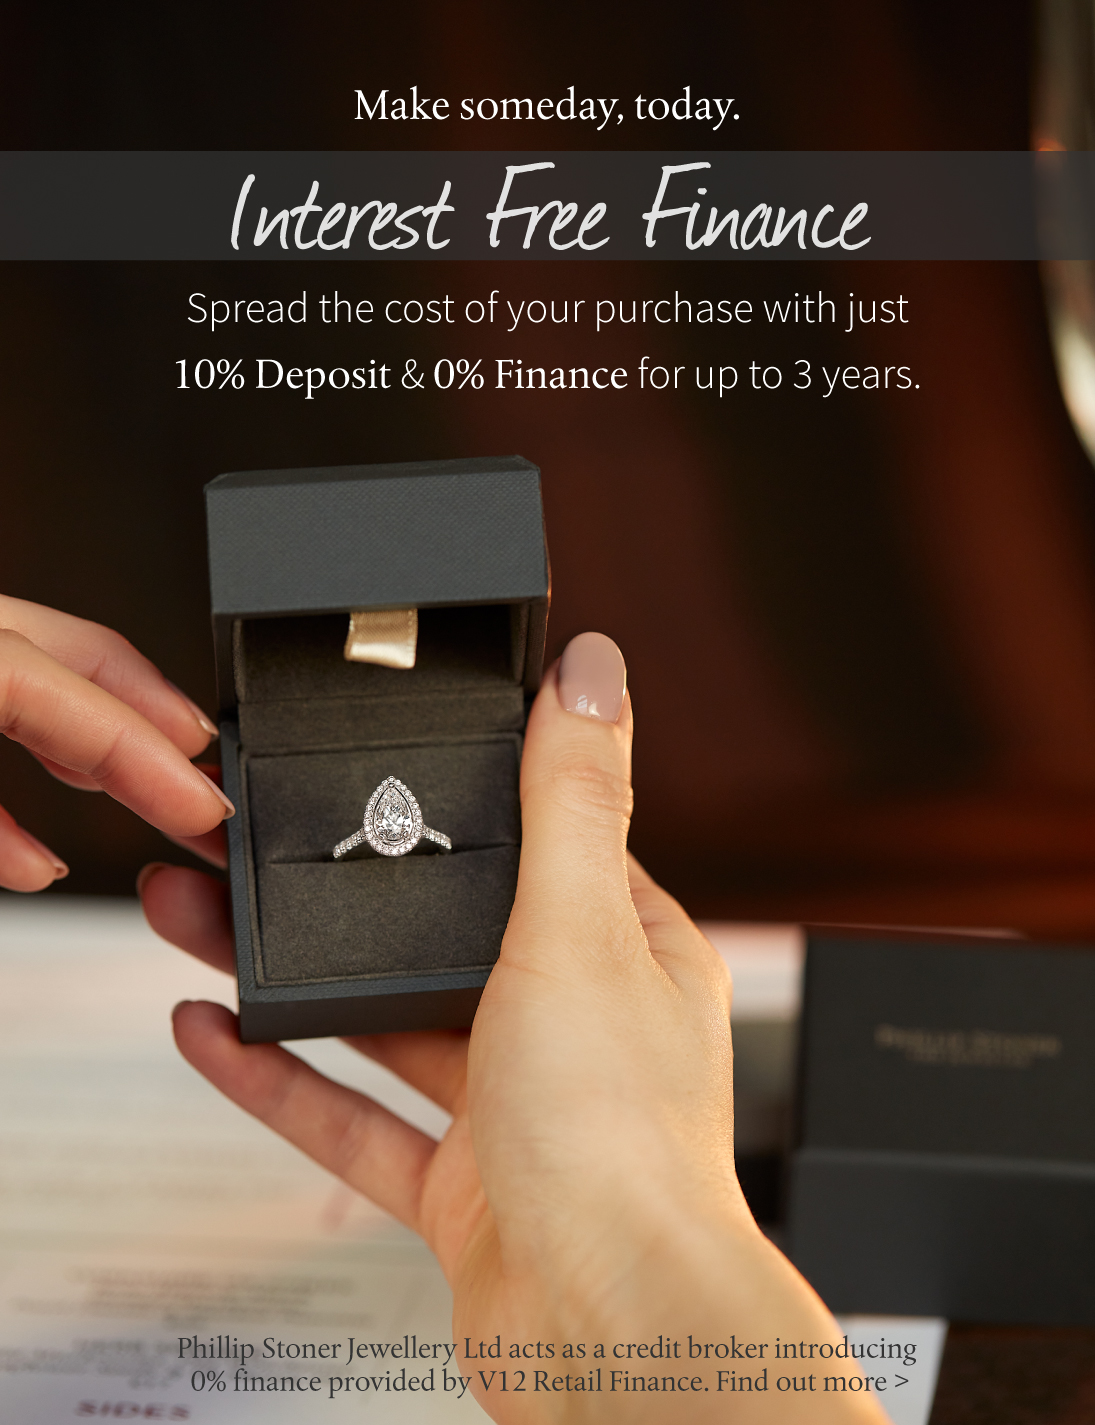 0% Interest Free Finance provided by V12 Retail Finance for Phillip Stoner The Jeweller